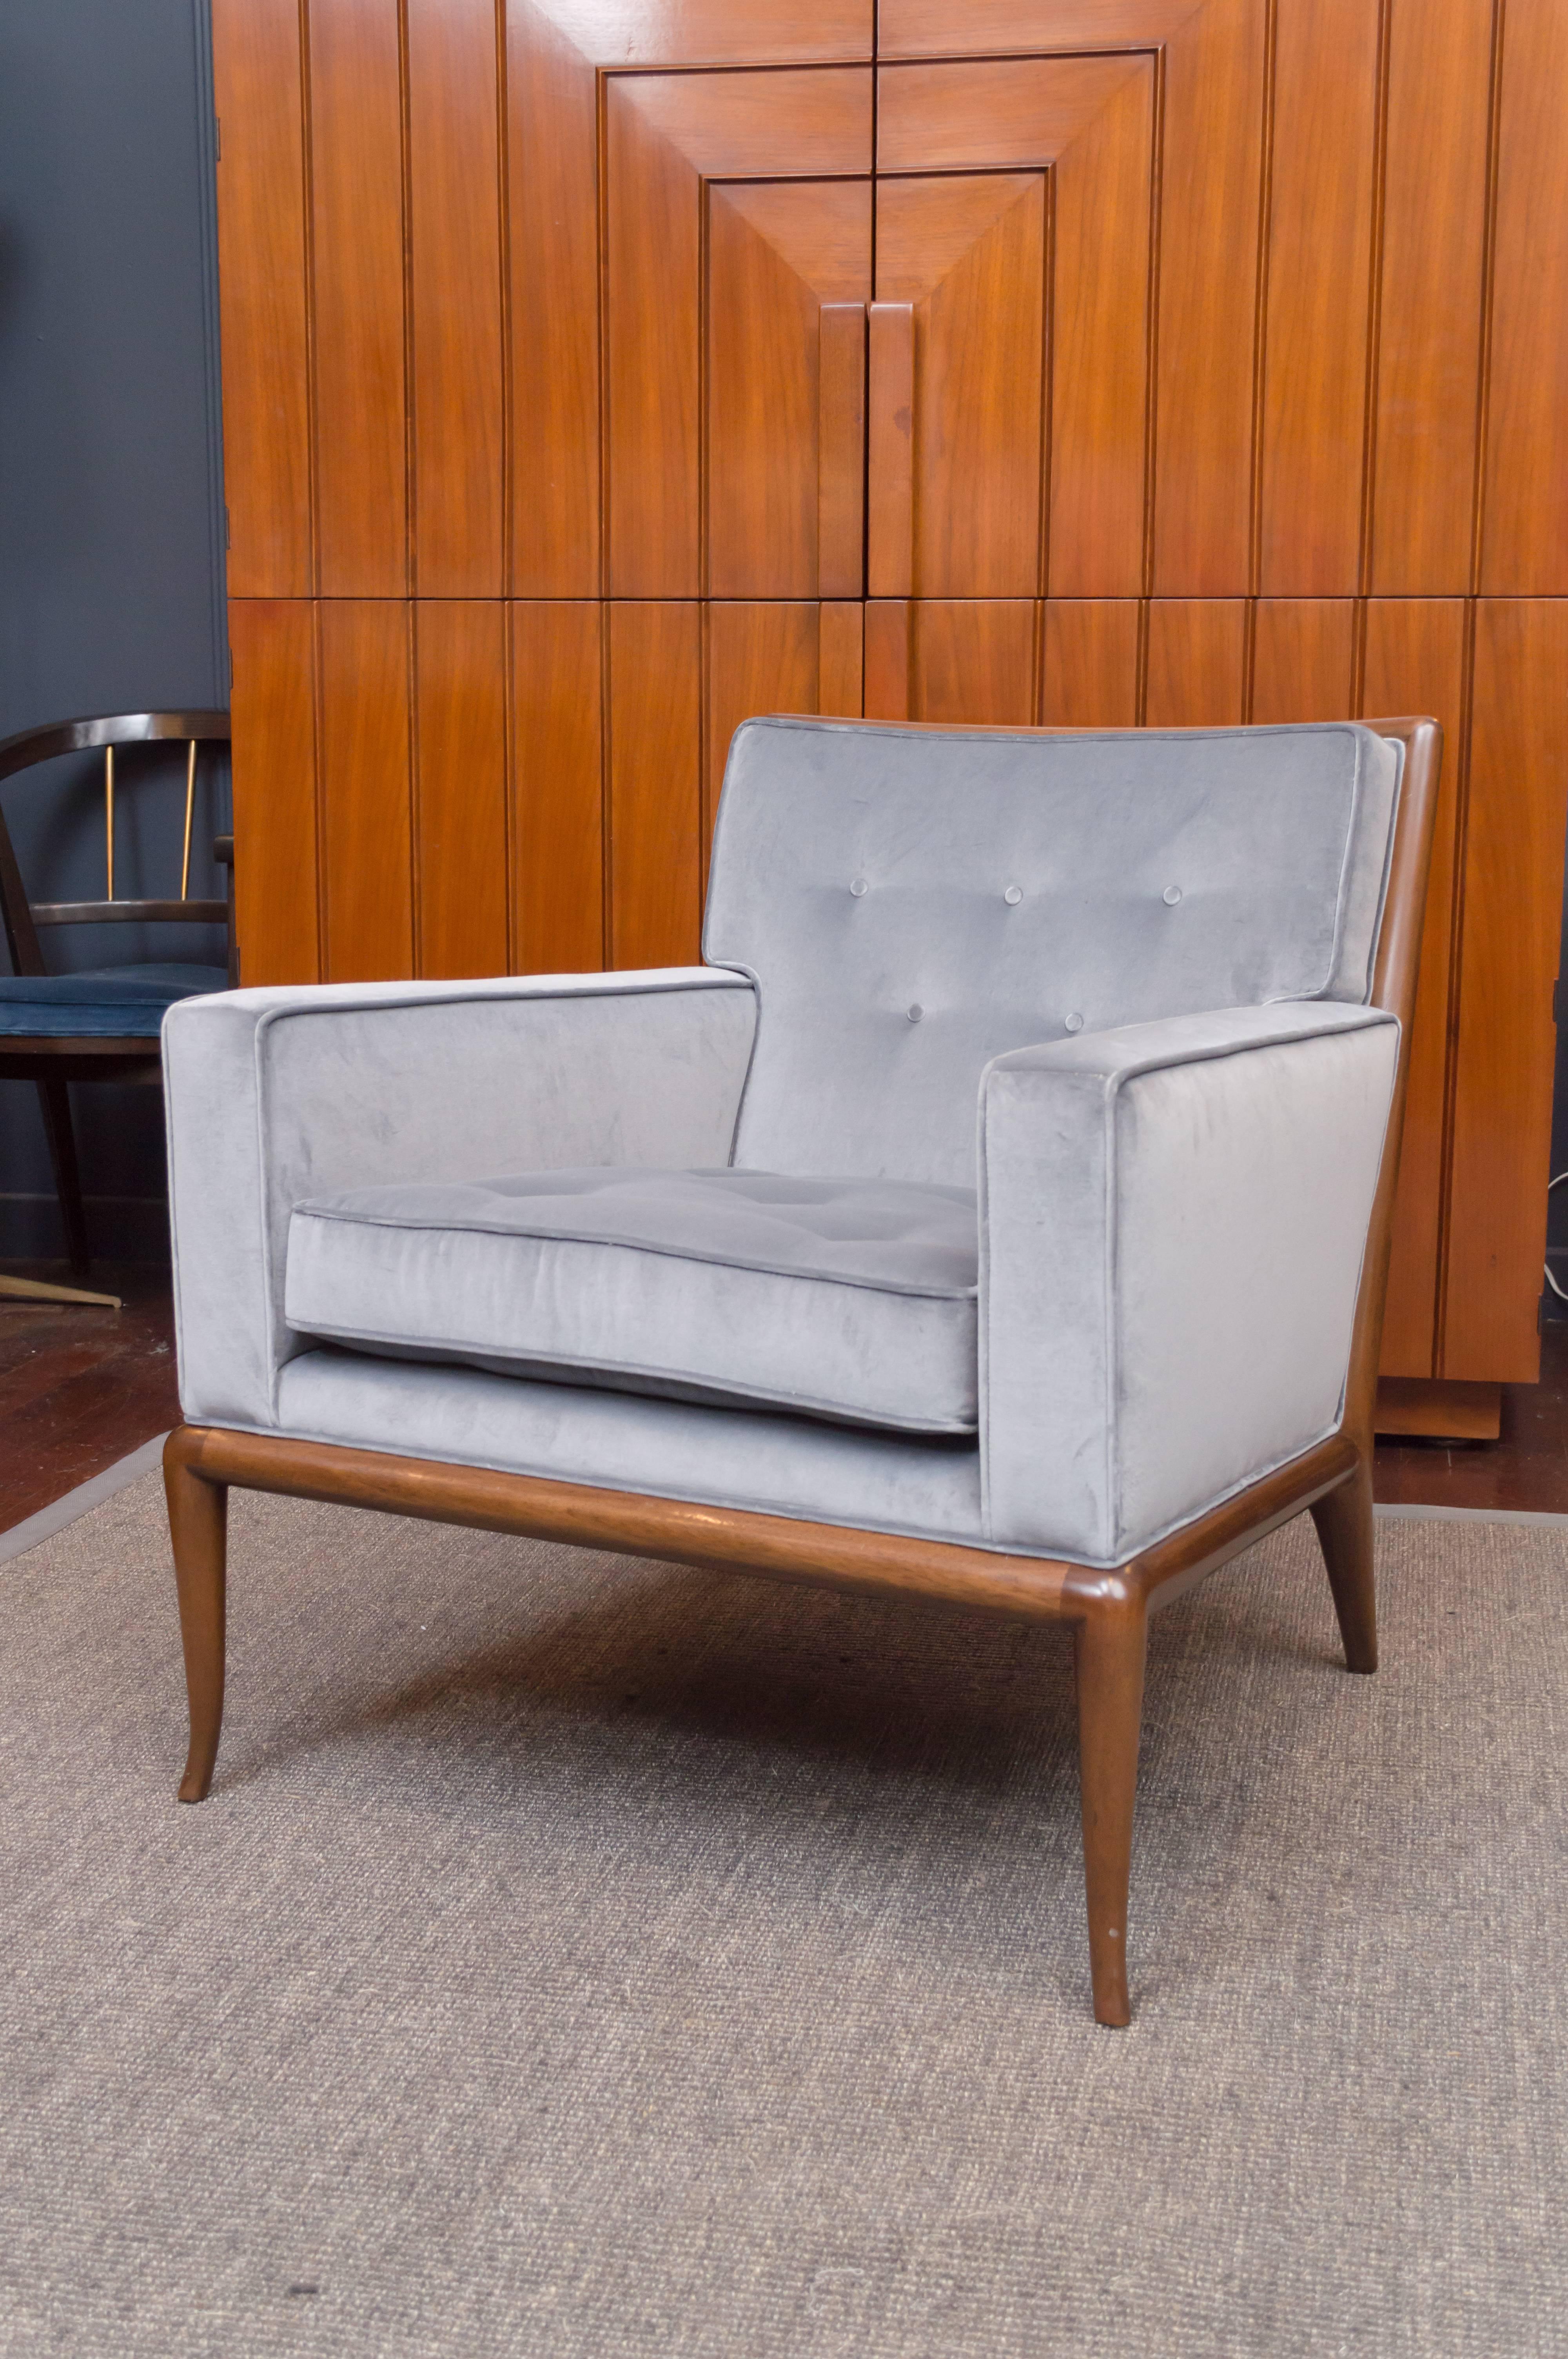 T.H. Robsjohn-Gibbings design mahogany and velvet upholster lounge chair for Widdicomb Furniture Co. Newly refinished and upholstered in a Maharam velvet.